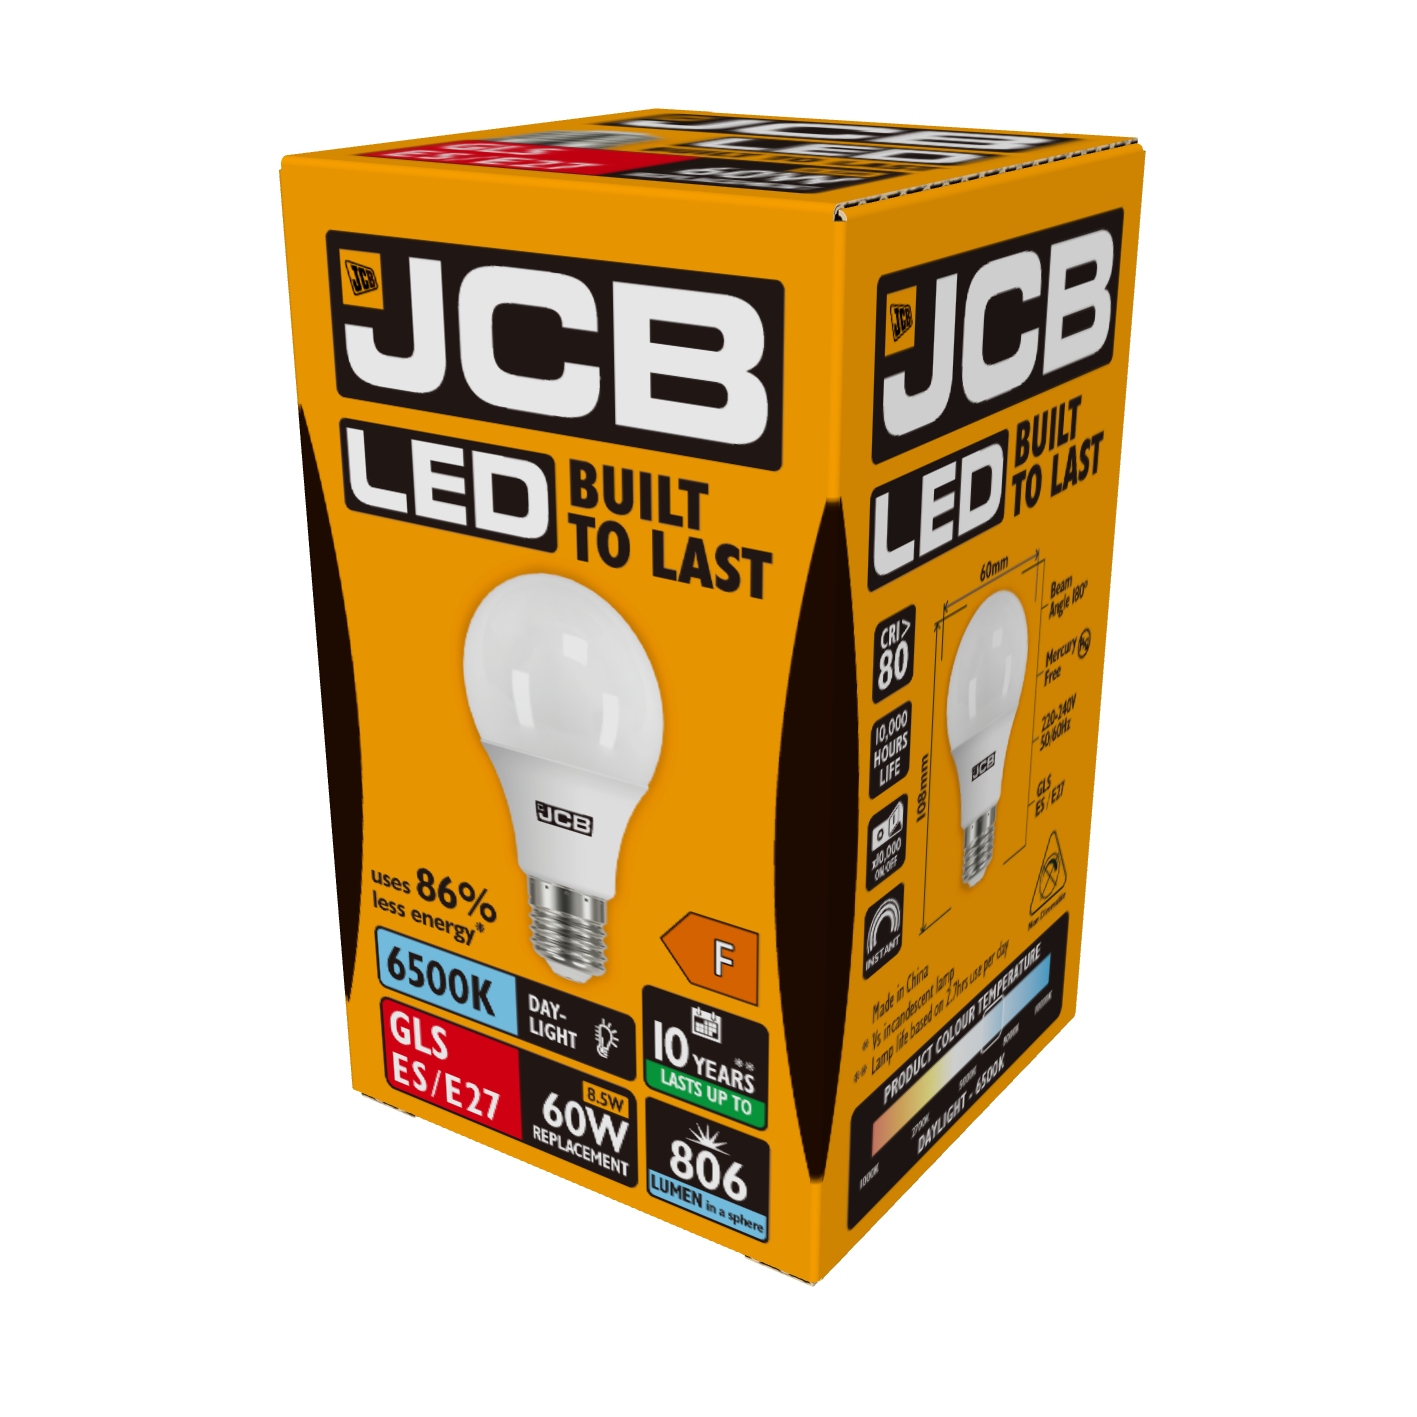 JCB LED GLS E27 (ES) 806lm 8,5W 6.500K (luz diurna), Caja de 1